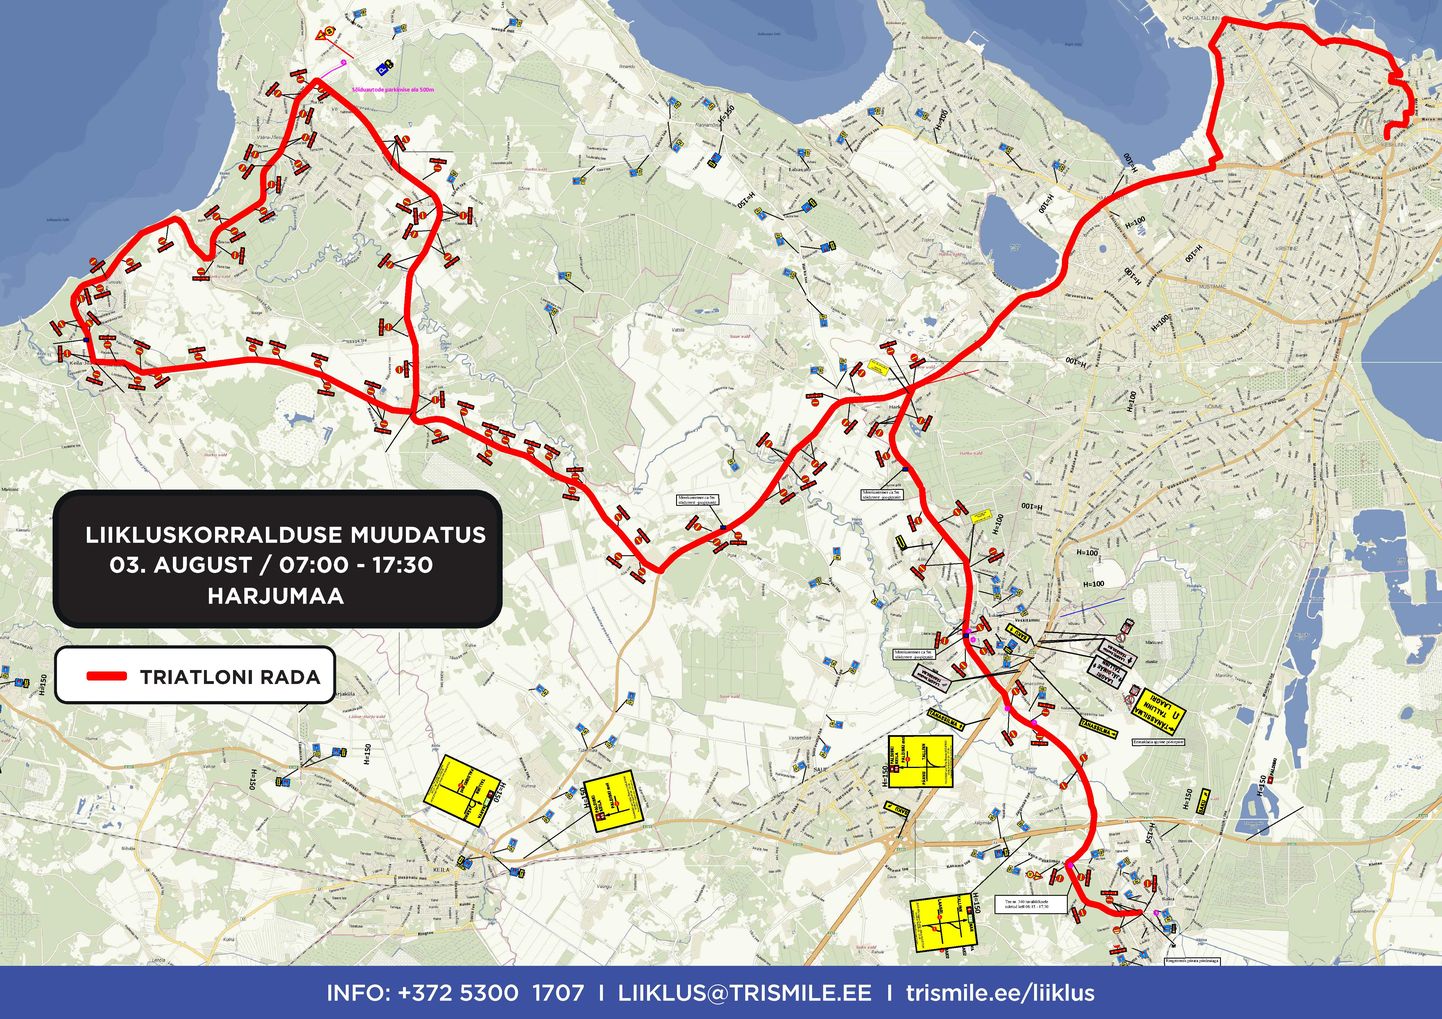 Sel nädalavahetusel juba teist aastat toimuv triatlon Ironman Tallinn toob kaasa liikluspiiranguid nii Tallinnas kui Harjumaal.